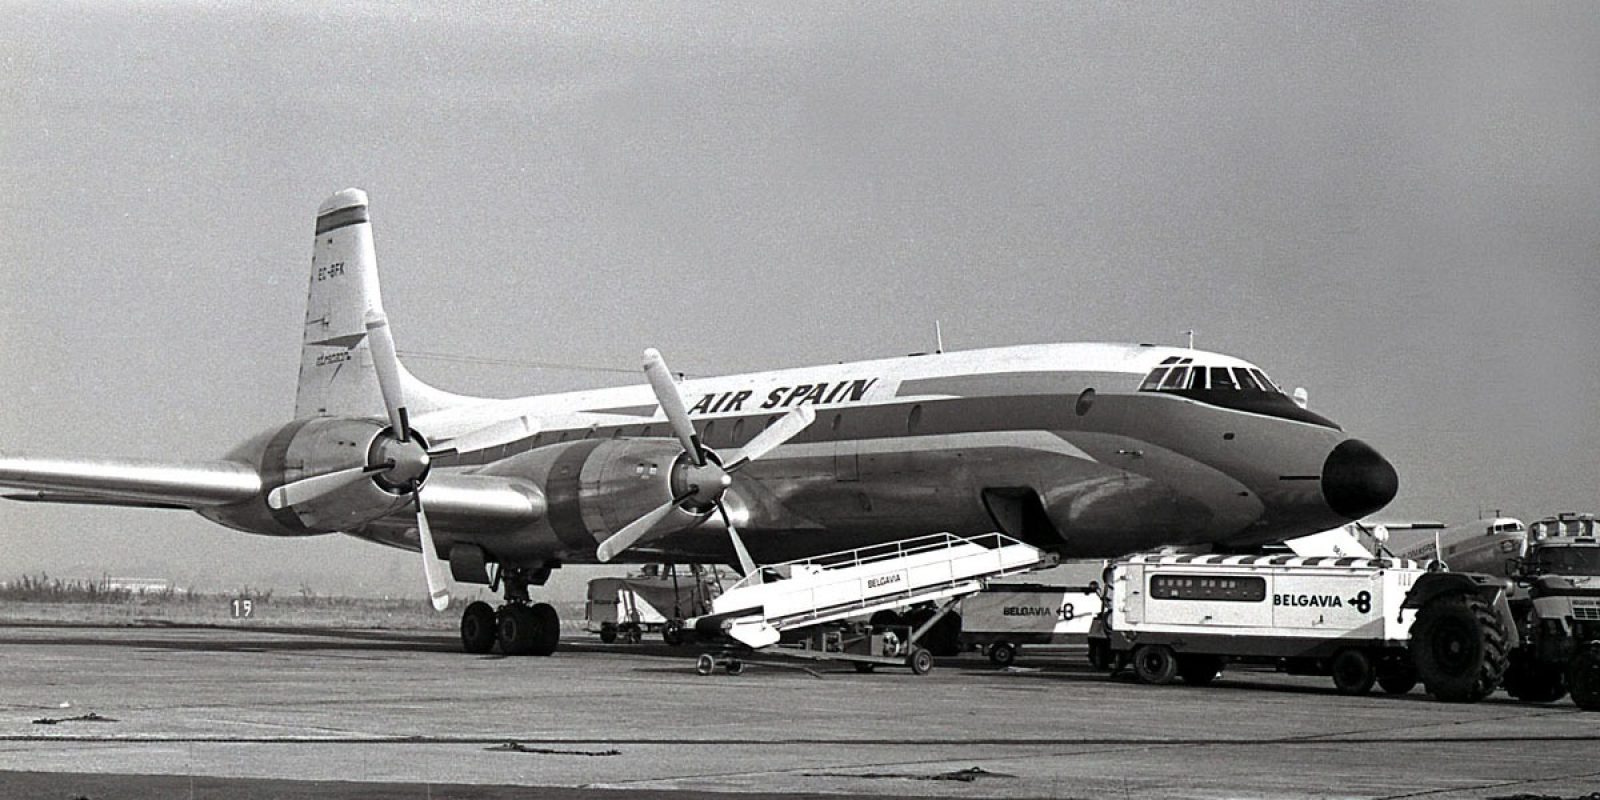 Le Bristol 175 Britannia d’Air Spain en cours de transbordement des bagages des passagers en 1969 à Zaventem; immatriculé EC-BFK en Espagne, ce fut l’avion du trajet aller à destination de Malaga en septembre 1969. (Photo Guy Viselé)